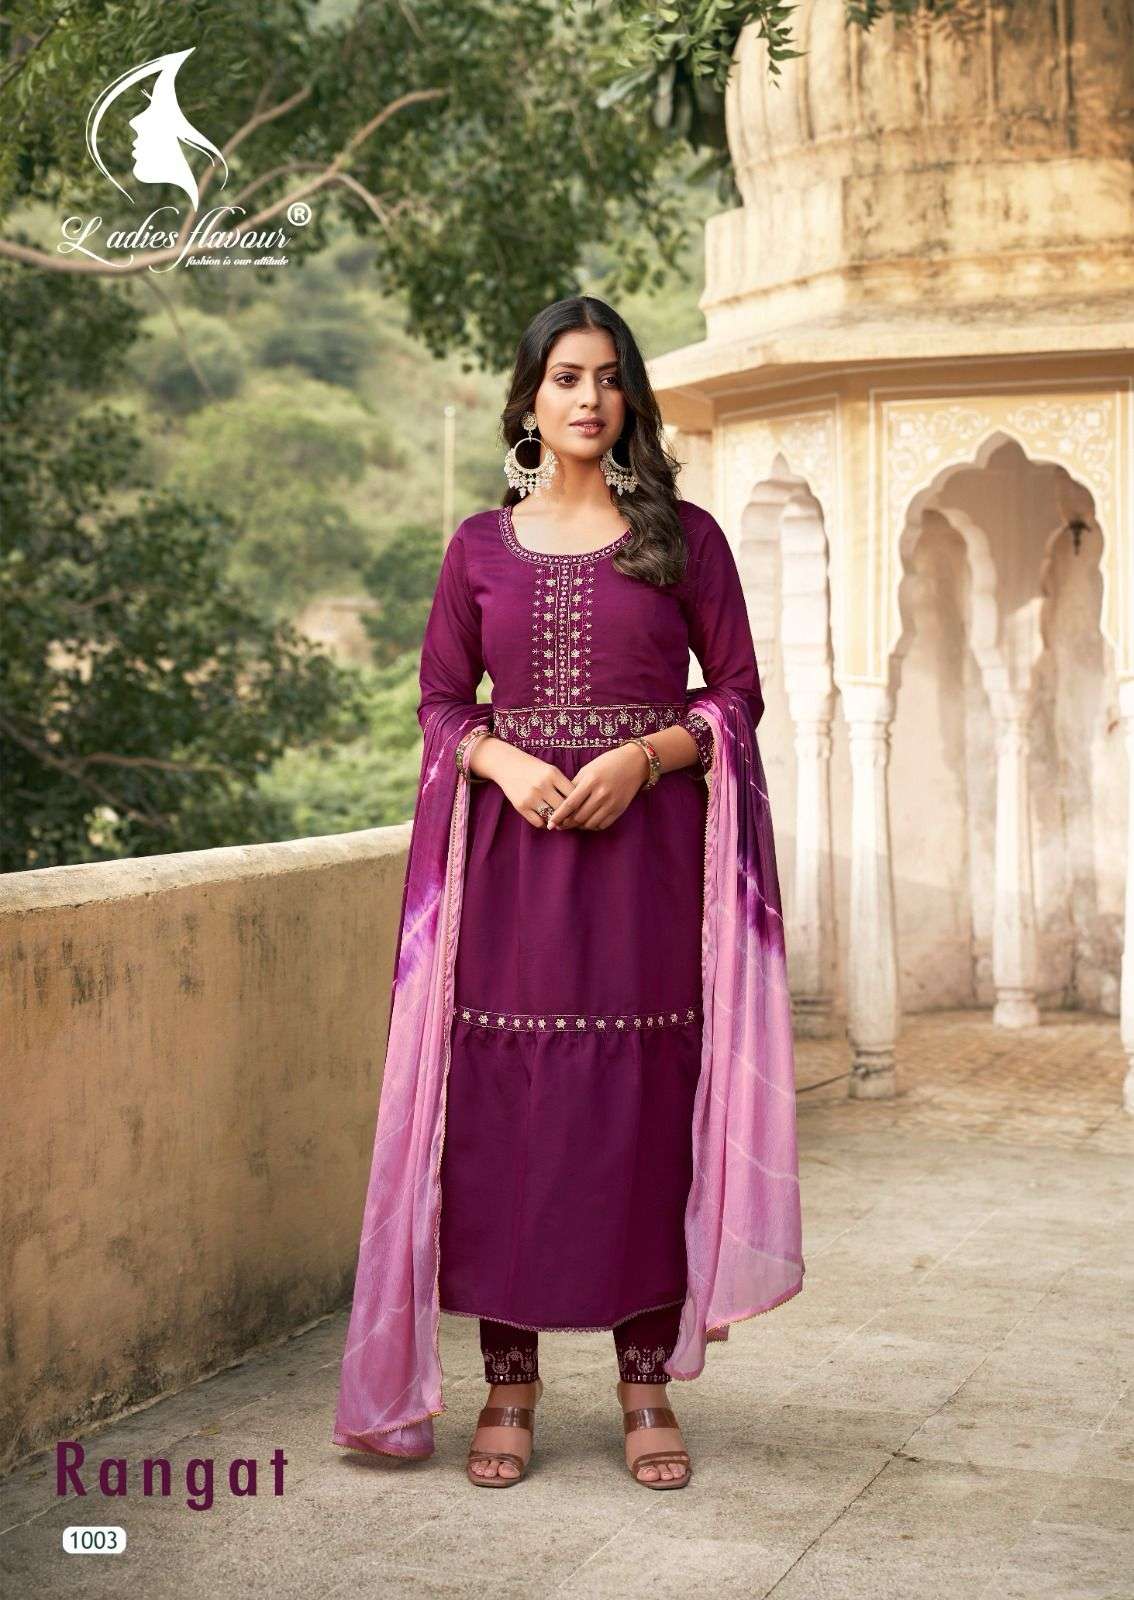 ladies flavour rangat series designer wedding wear kurti set wholesaler surat gujarat